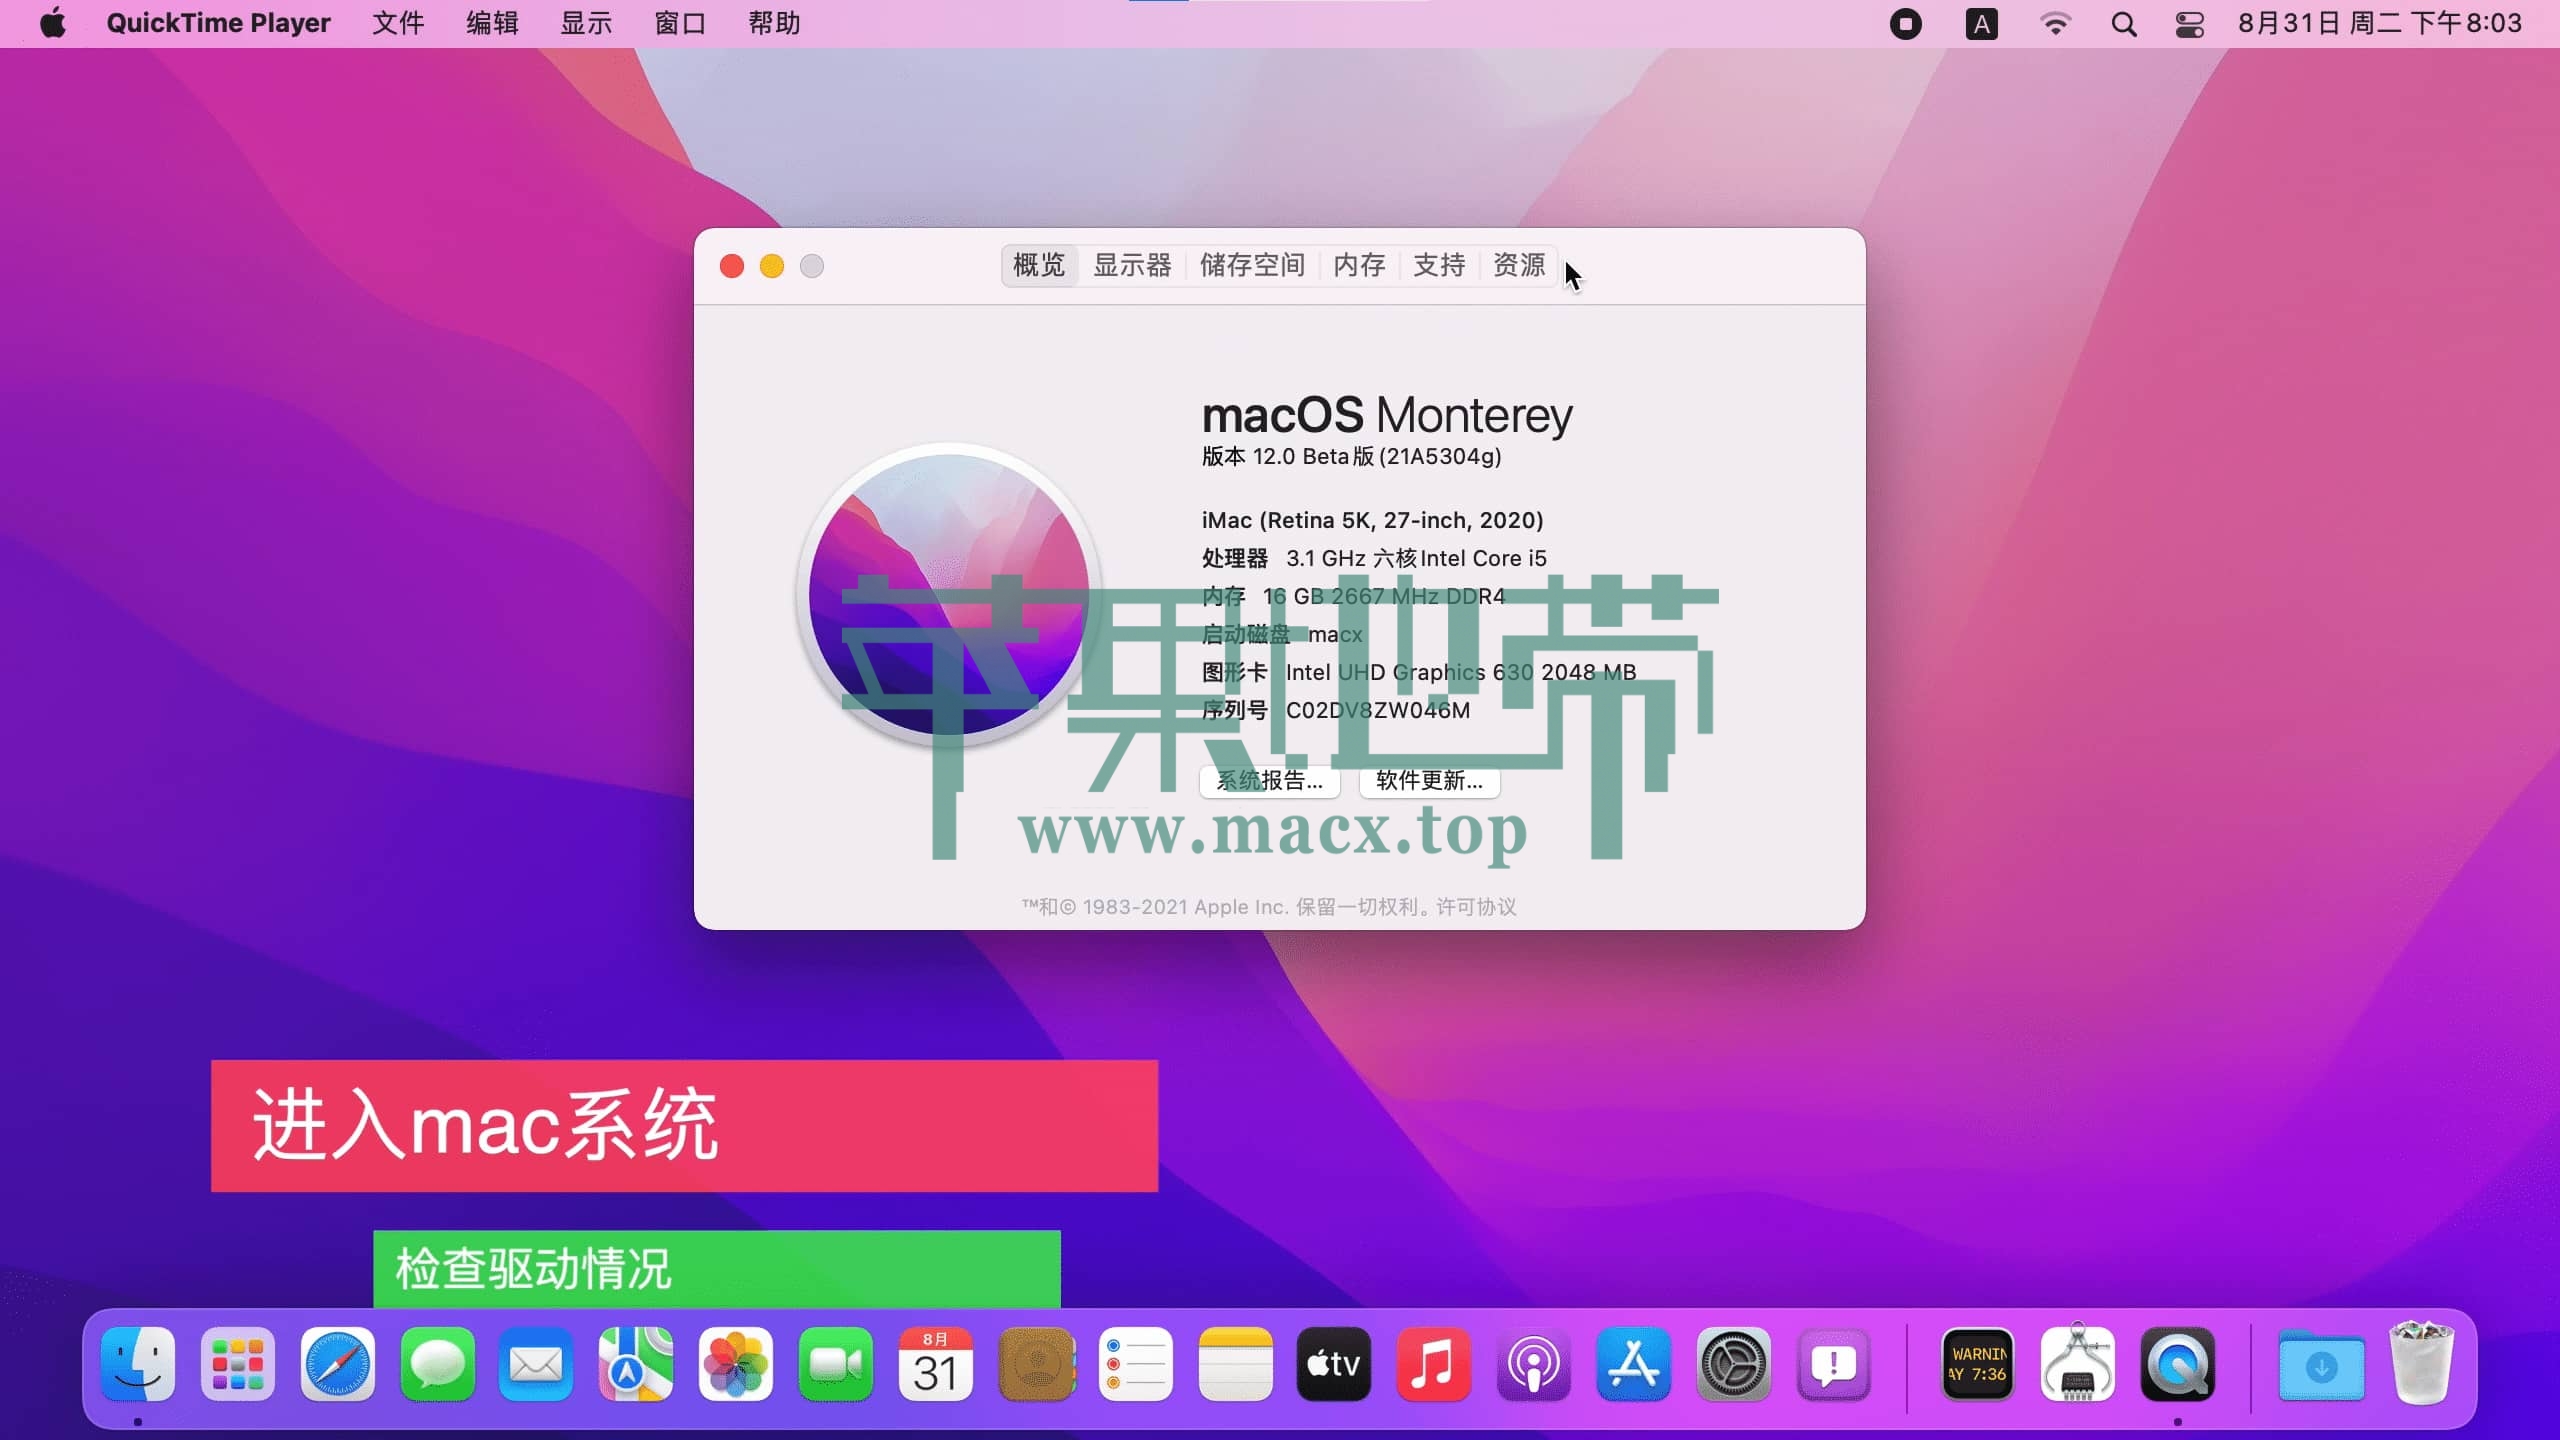 【黑苹果】macOS 12 Monterey 原版 OC 引导安装教程插图52